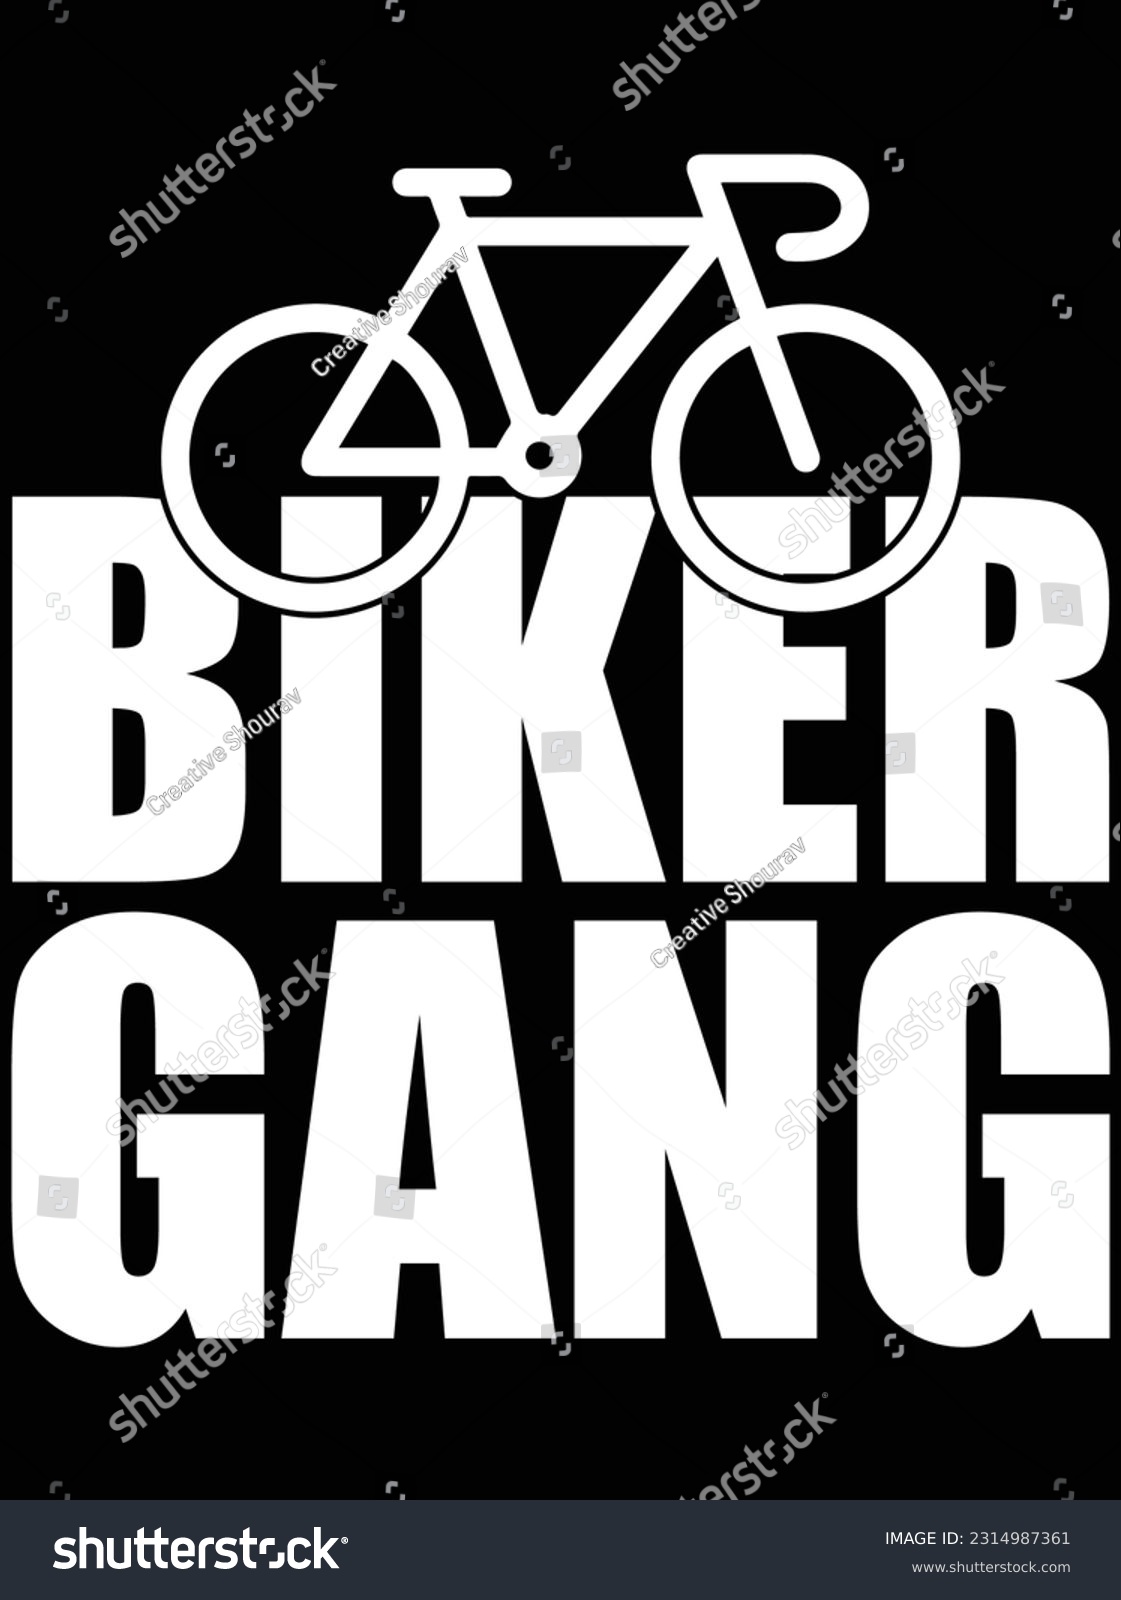 SVG of Biker gang vector art design, eps file. design file for t-shirt. SVG, EPS cuttable design file svg